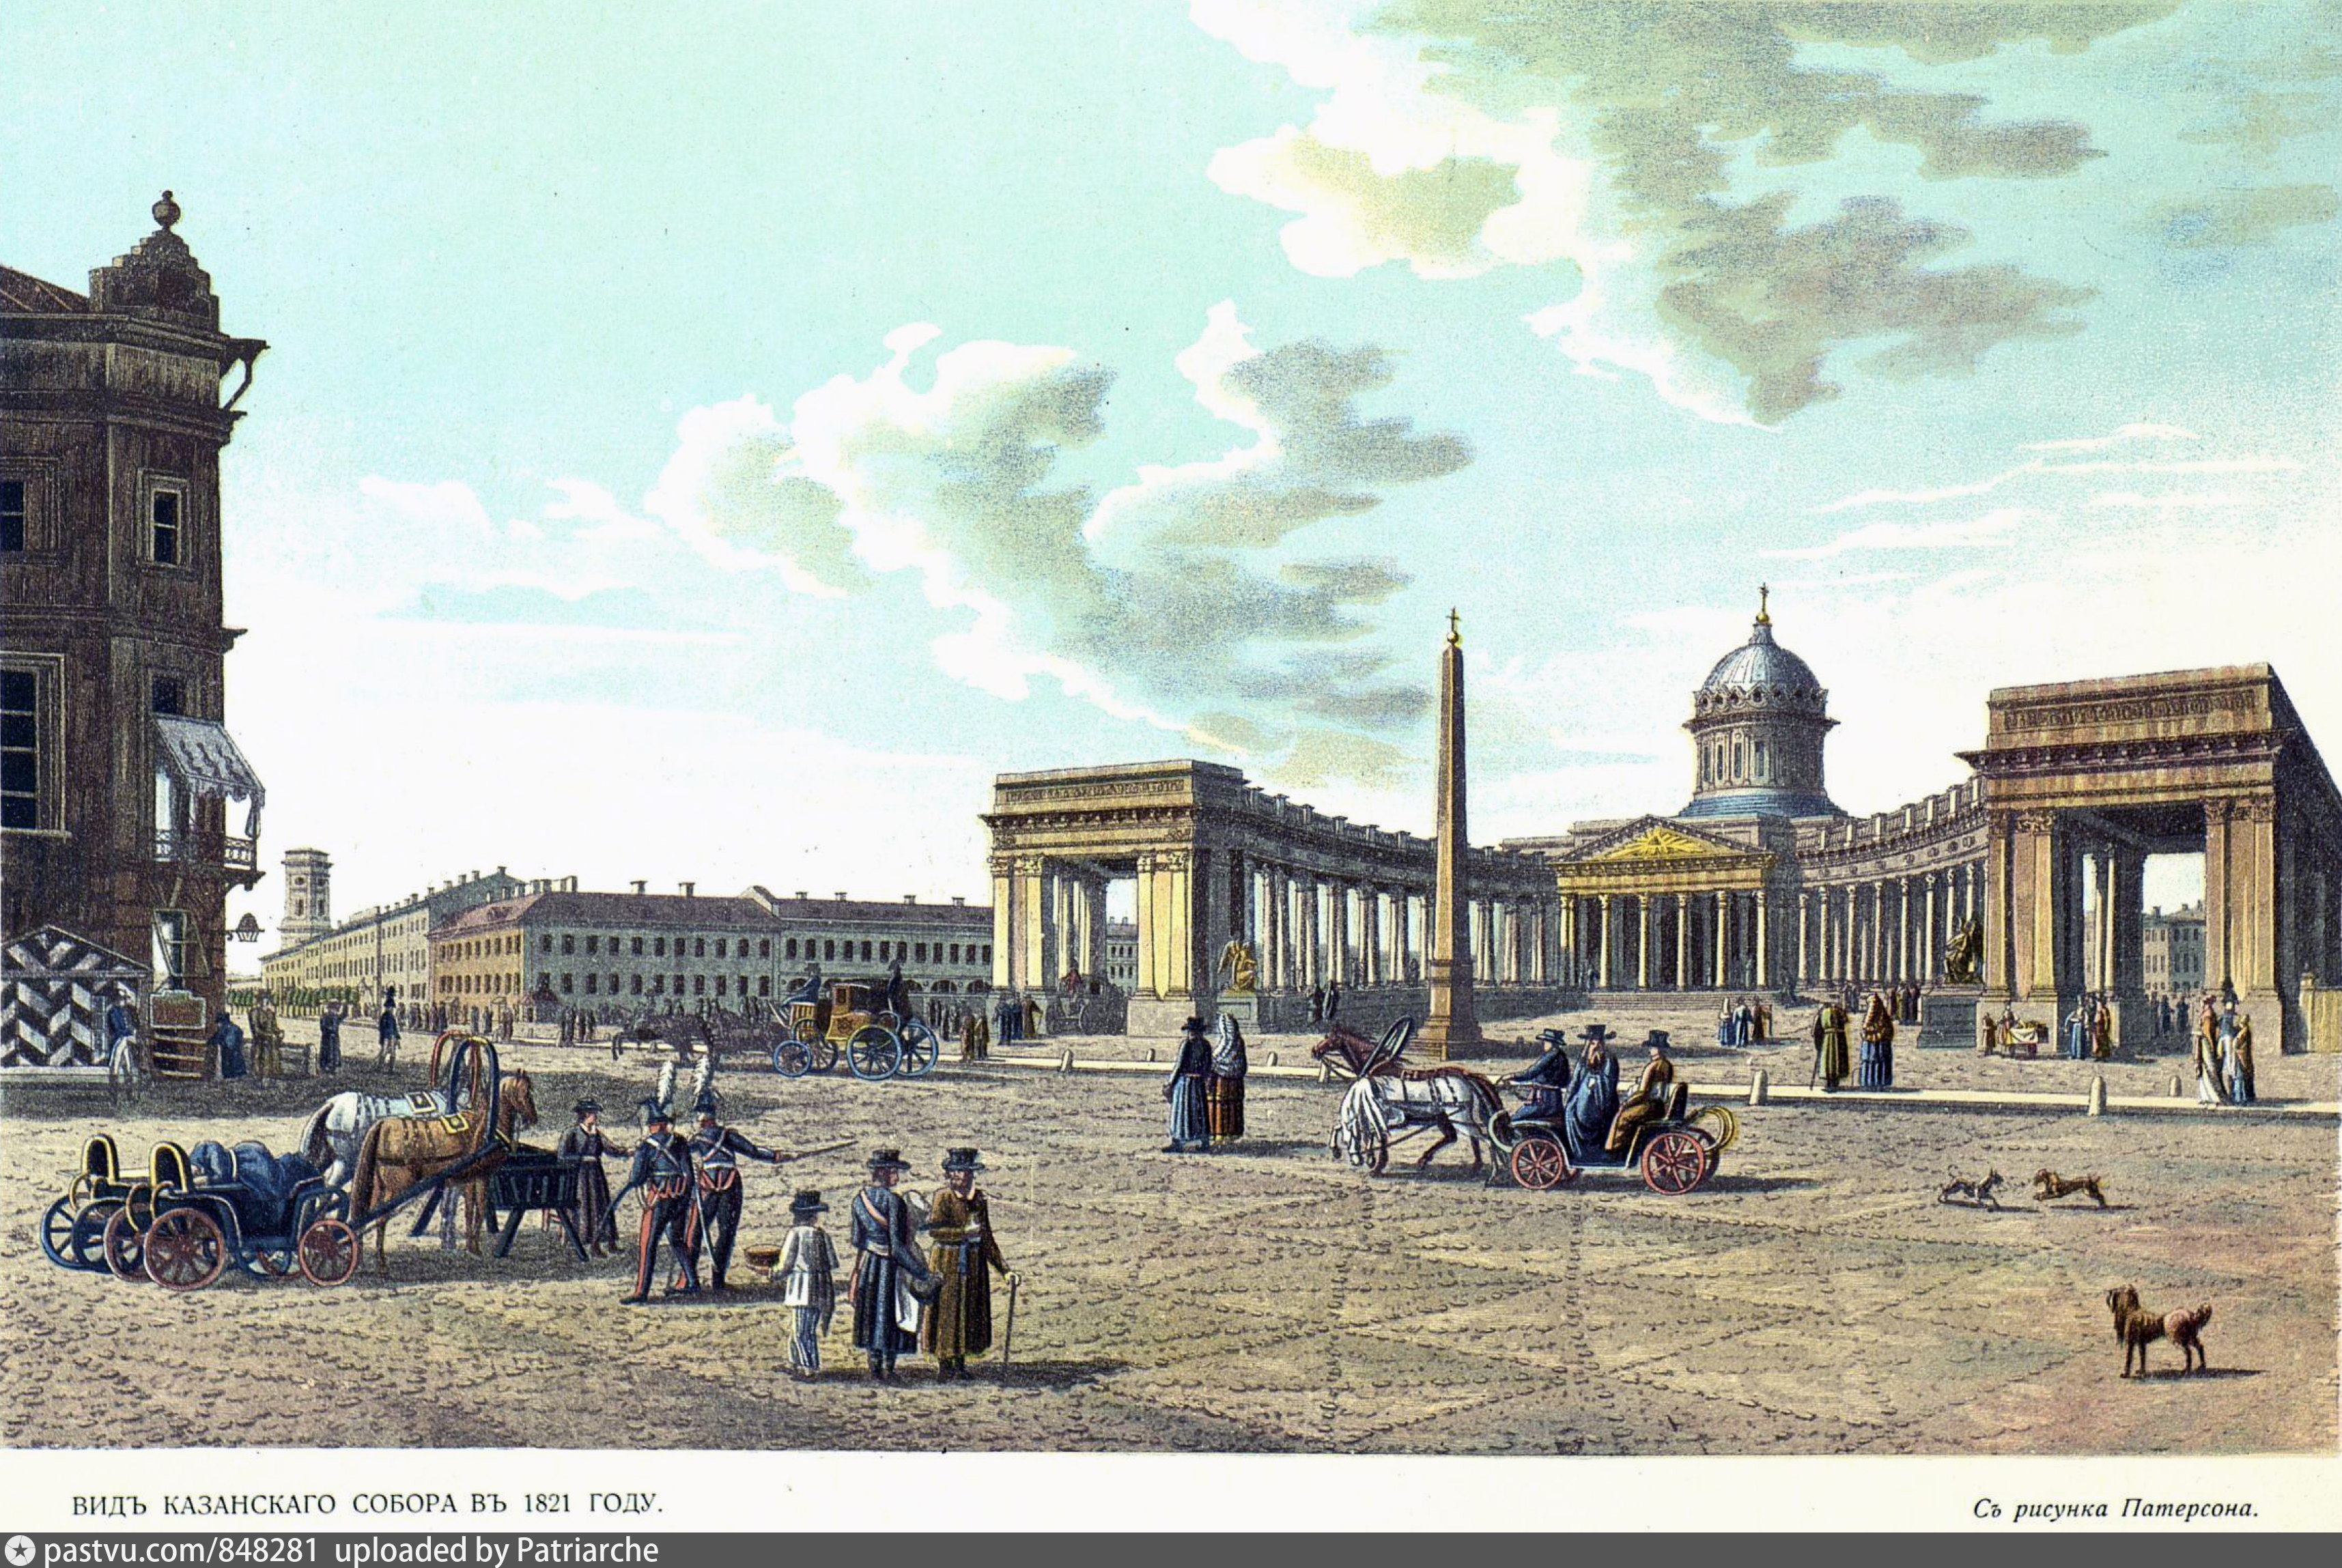 Достопримечательности 18 века. Вид Казанского собора в 1821.